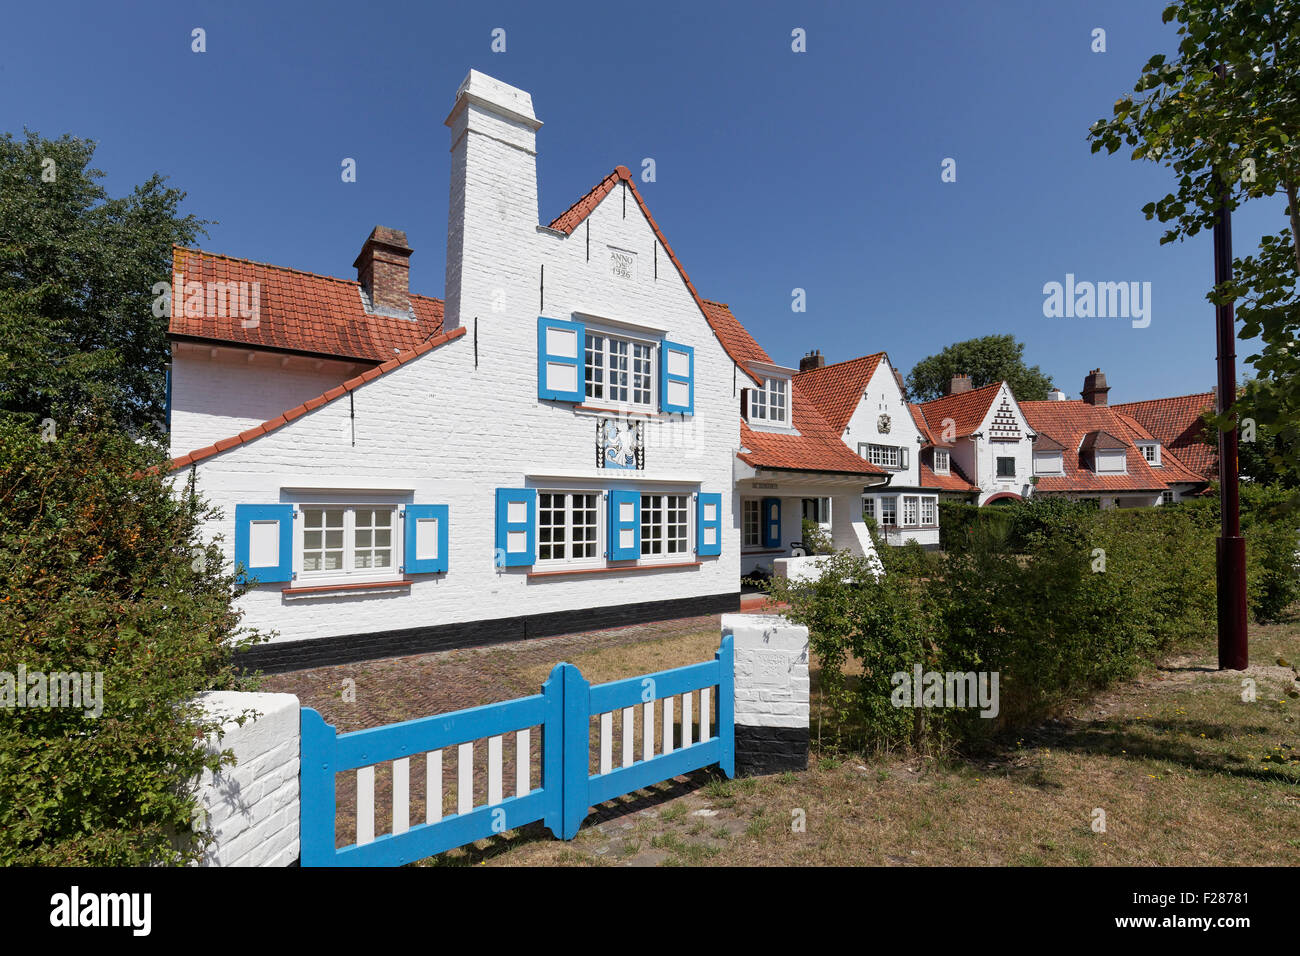 Villa blanche de 1926, style maison de campagne historique de Concessie, uptown, station balnéaire de Haan, côte belge, Flandre occidentale Banque D'Images